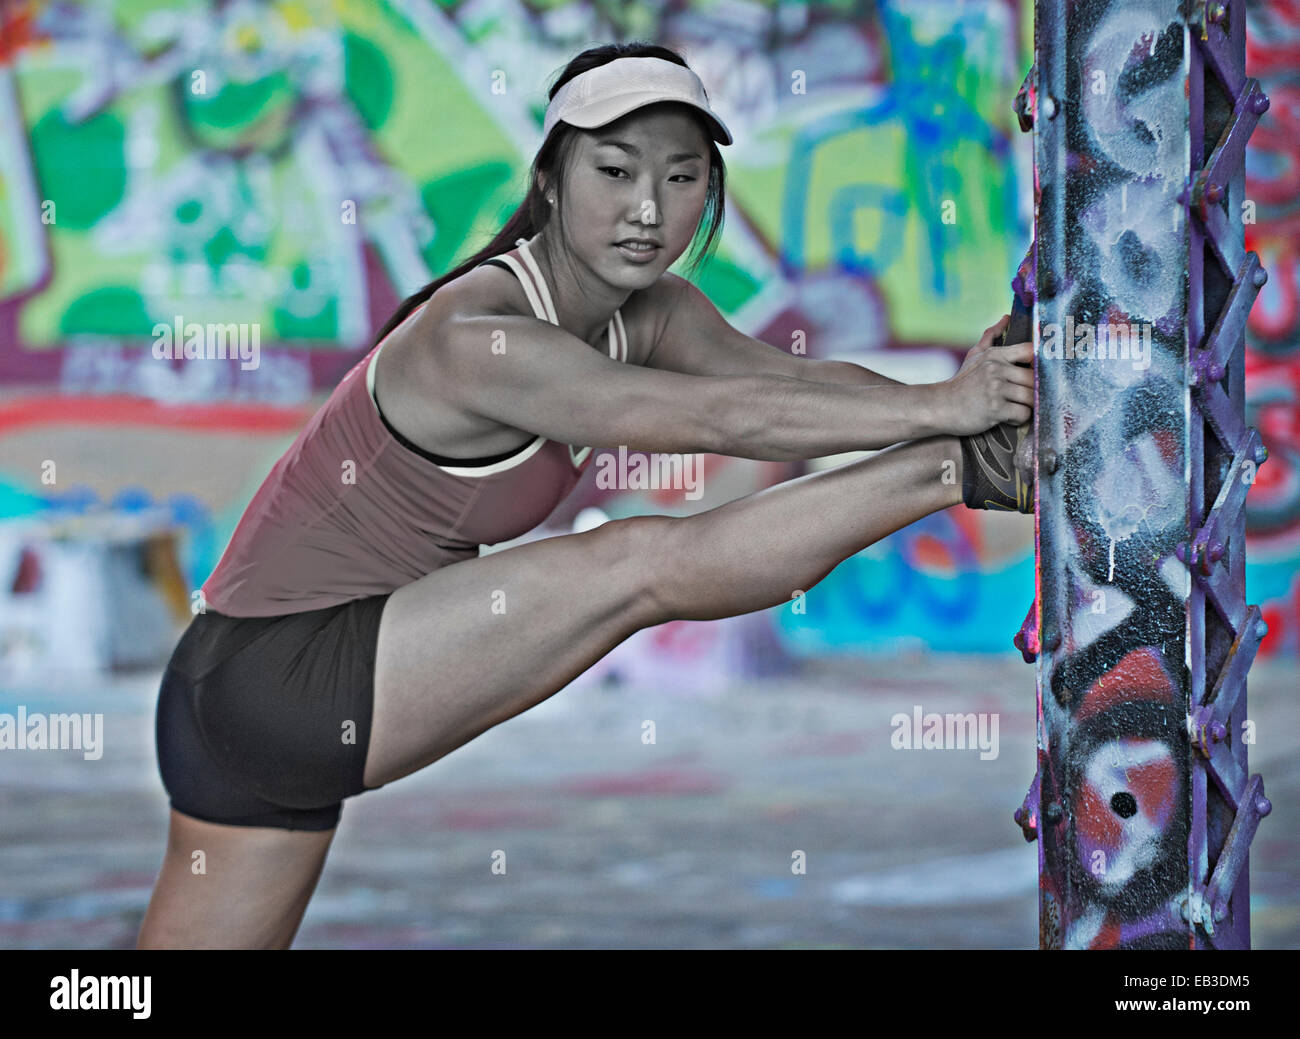 Runner coréen s'étendant sur colonne avec graffiti Banque D'Images